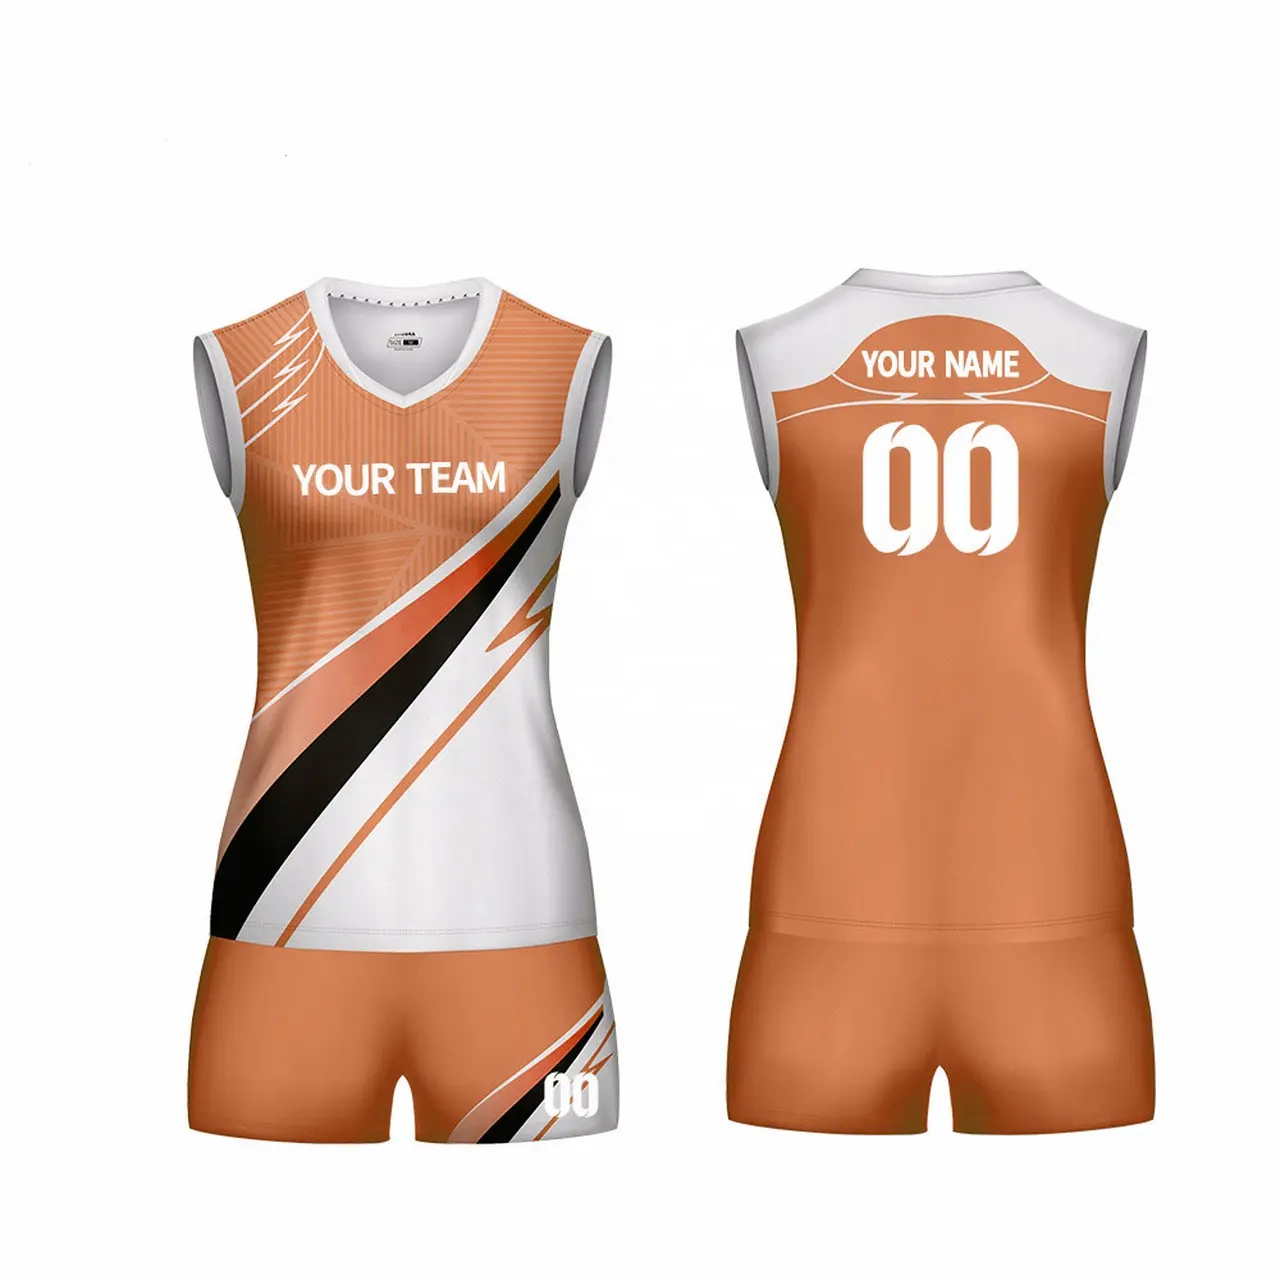 Uniforme de voleibol para mujer y niña, jersey de voleibol ligero y sublimado, diseño personalizado, gran oferta